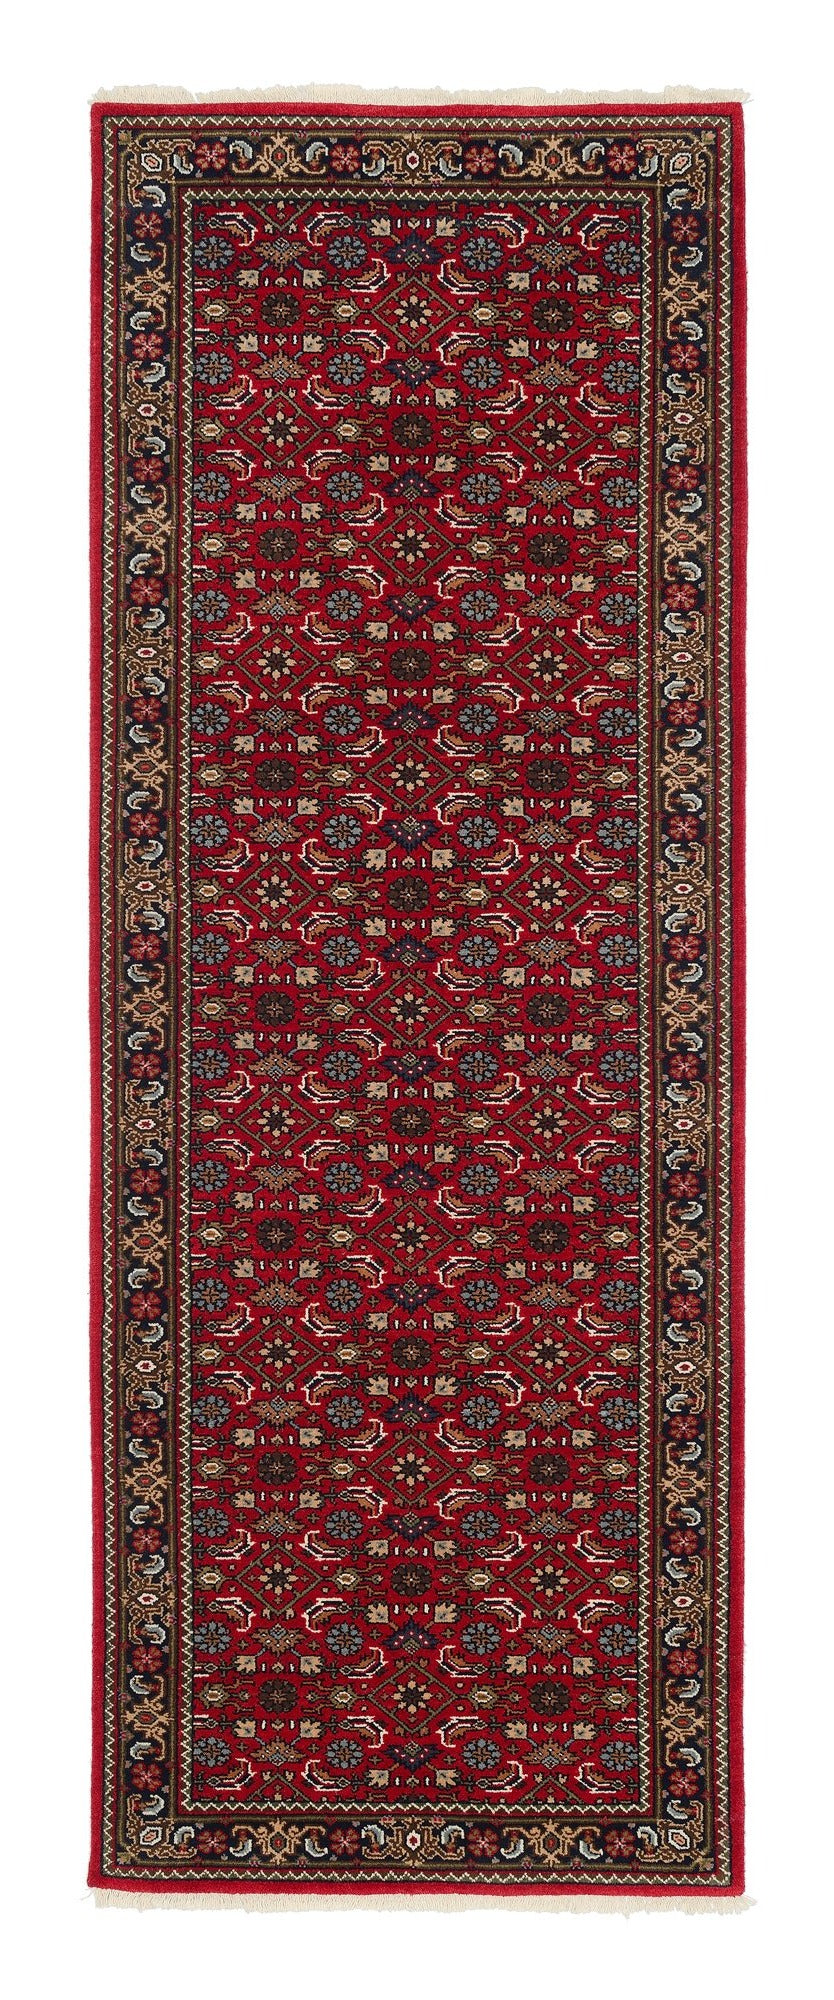 OCI Teppich CAVARI HERATI rot-creme Läufer echter klassischer Orient-Teppich handgeknüpft